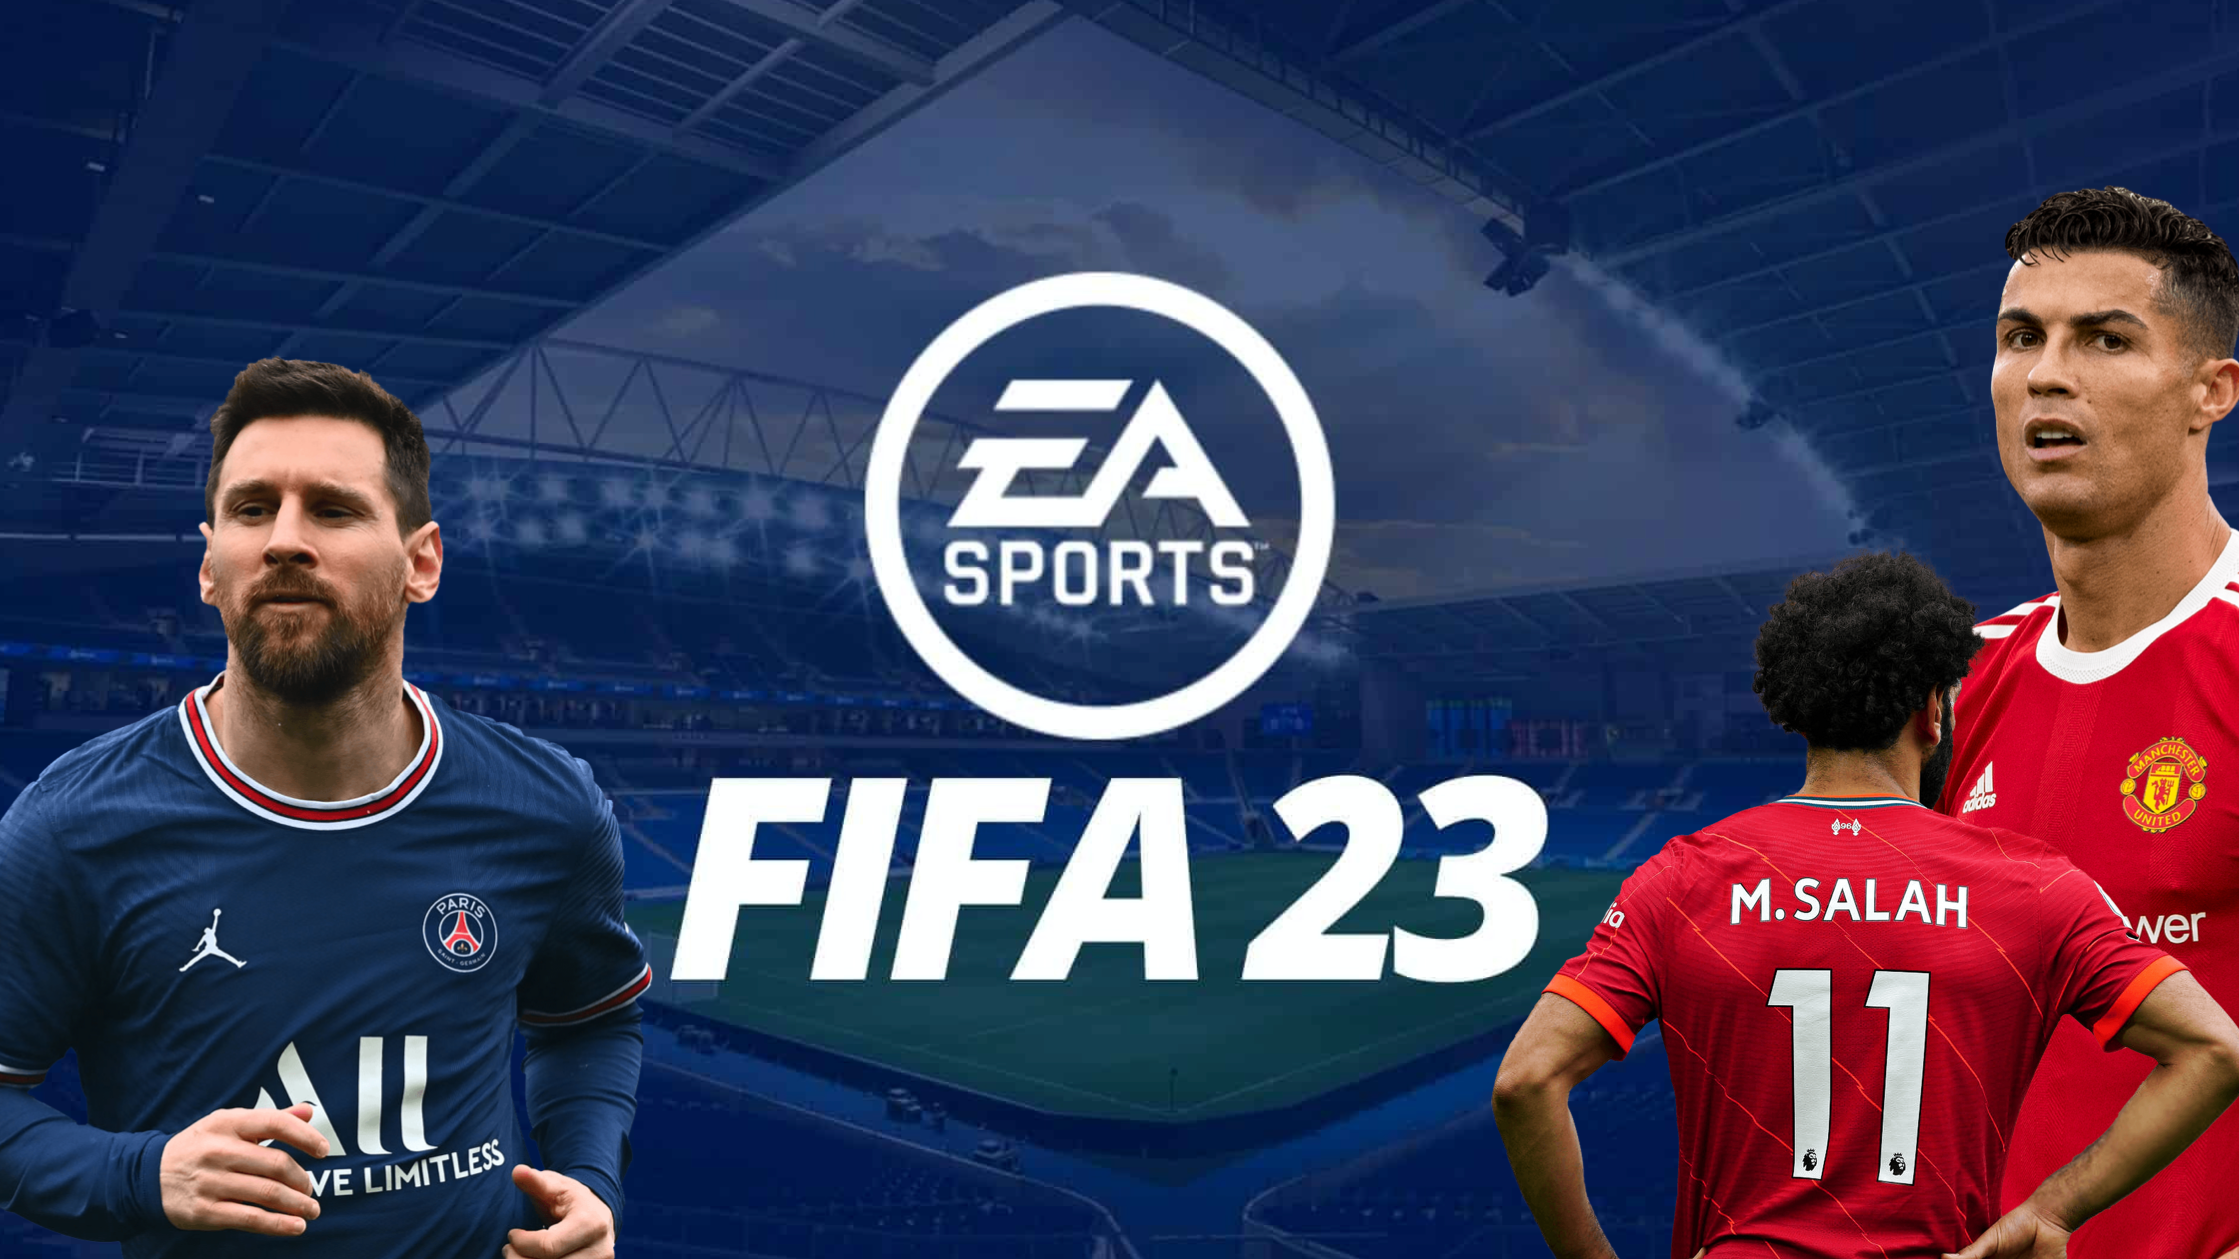 FIFA 23 UEFA Champions League – FIFPlay